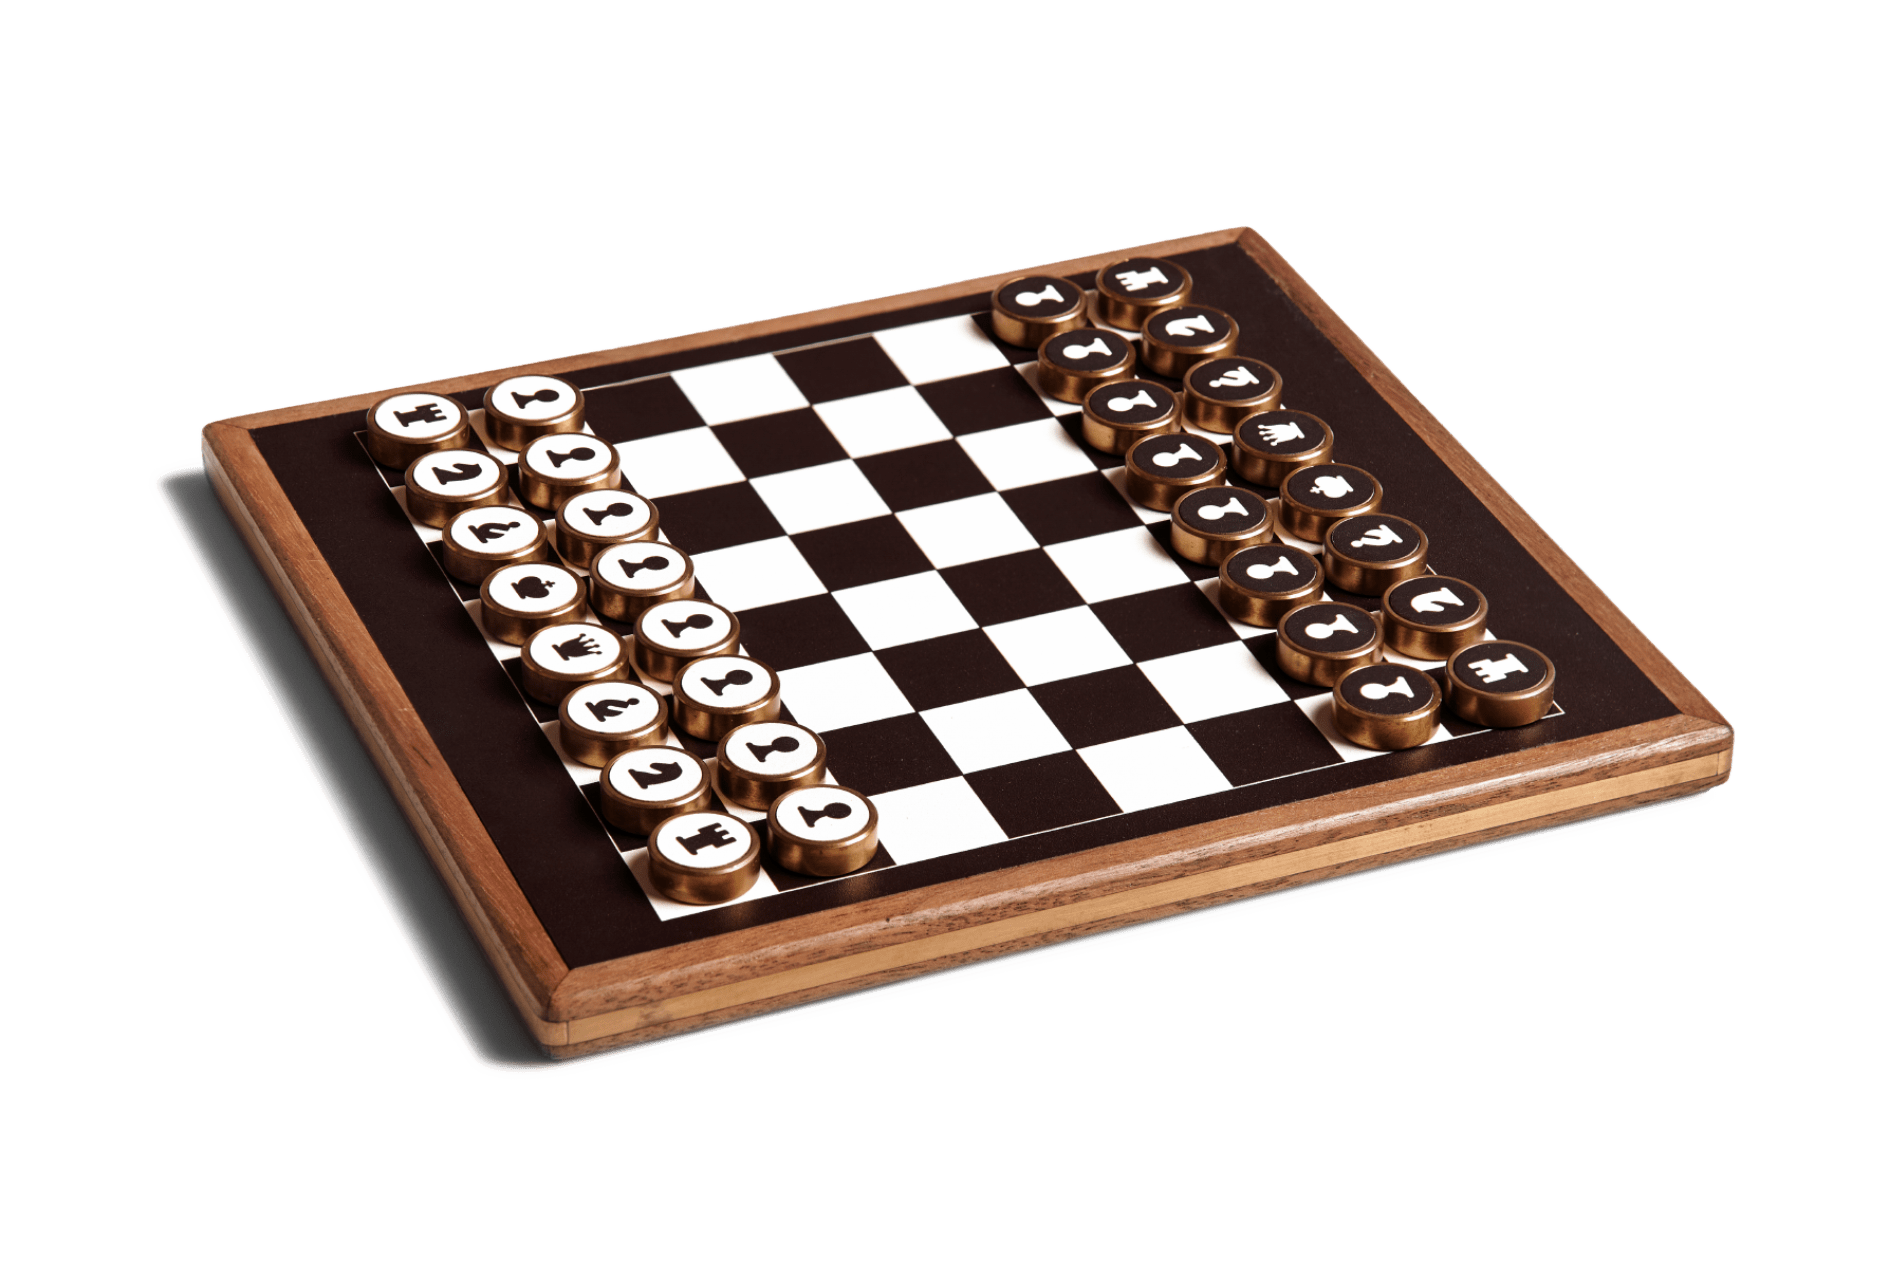 maztermind_twoinone_chess_chinesechess_luxury_handicraft6